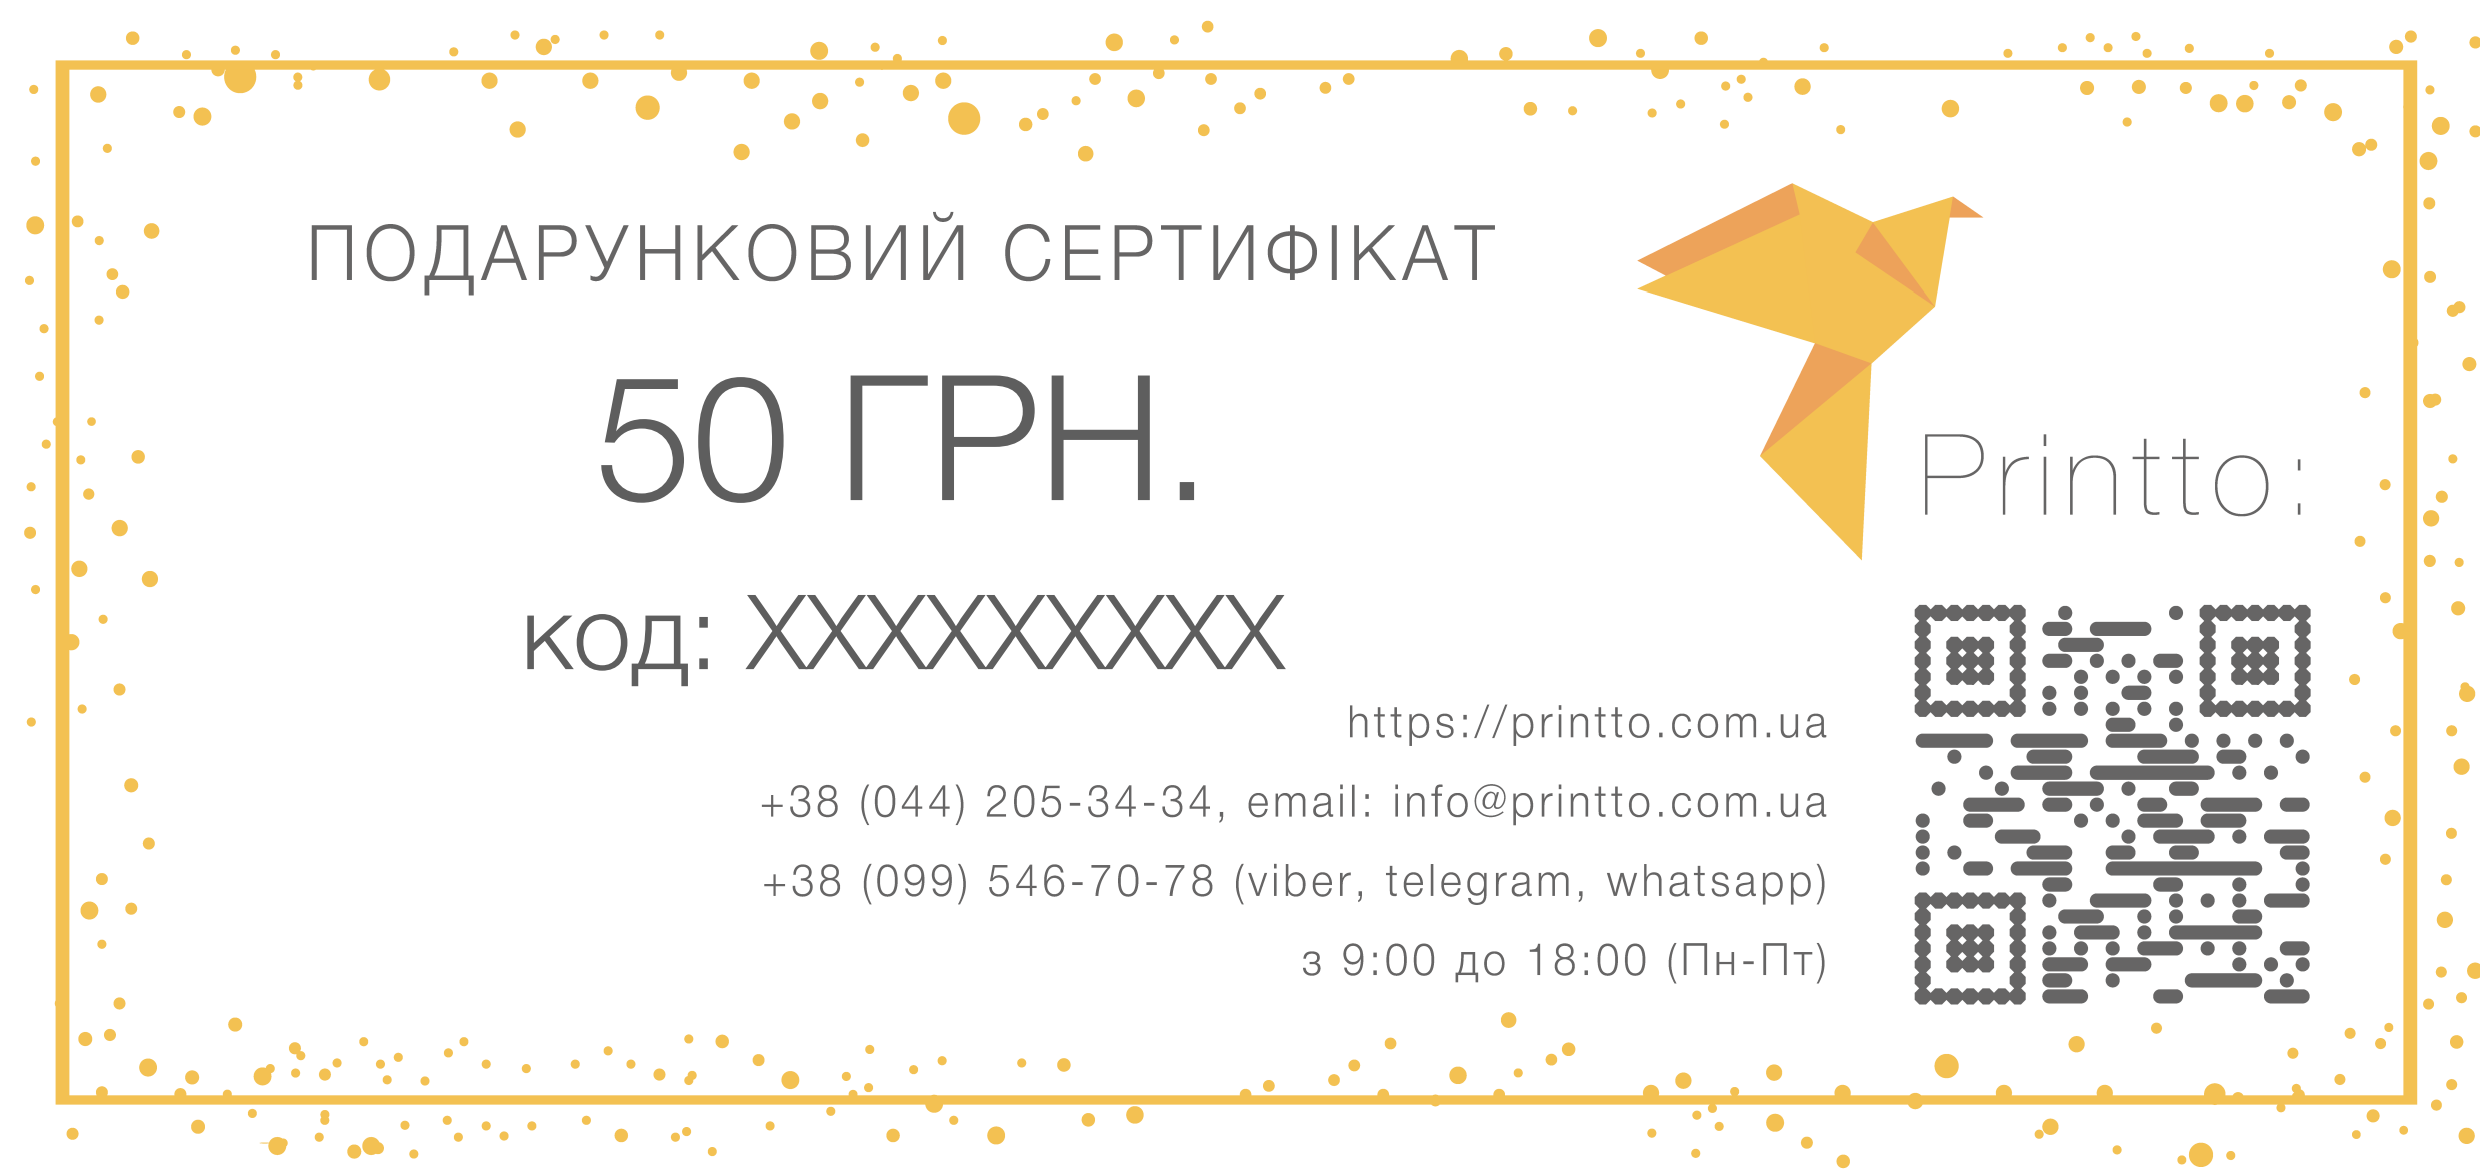 Подарунковий сертифікат на 50 грн. | PrintTo: